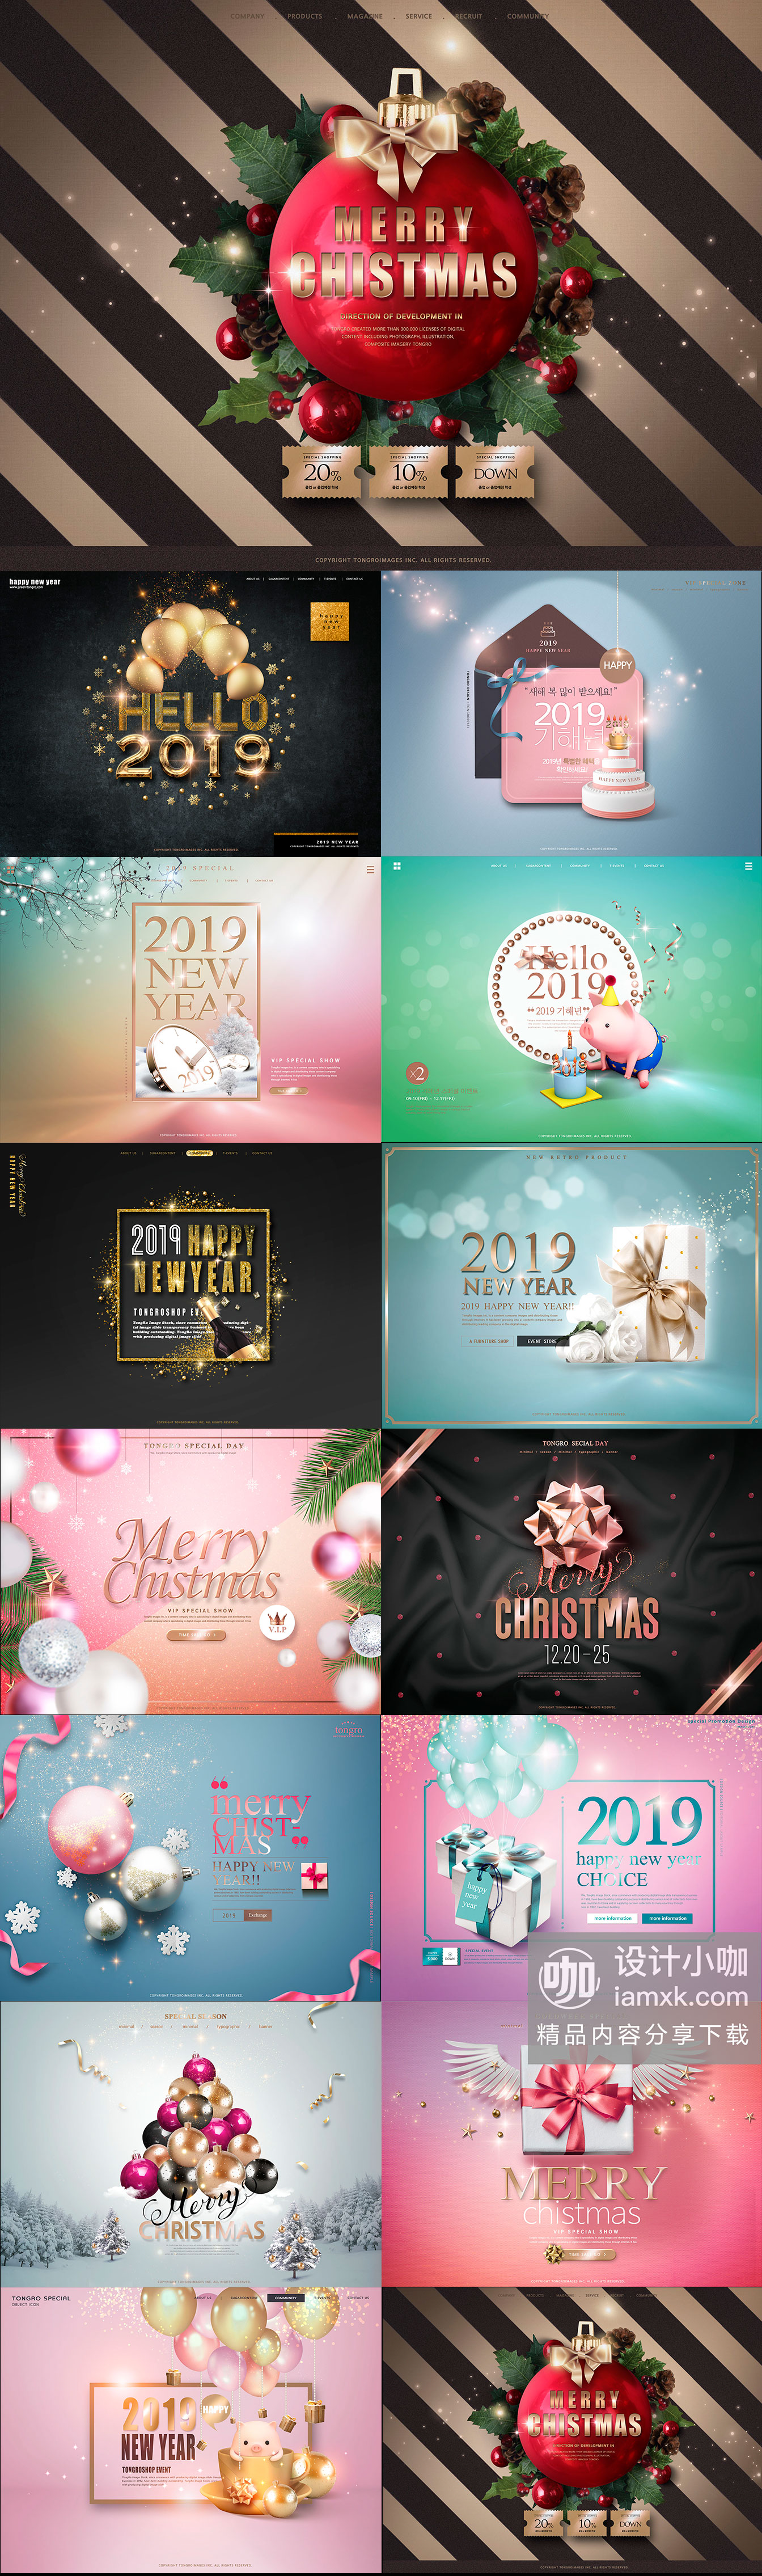 韩国素材：2019新年圣诞高品质广告专题素材合集 [PSD]